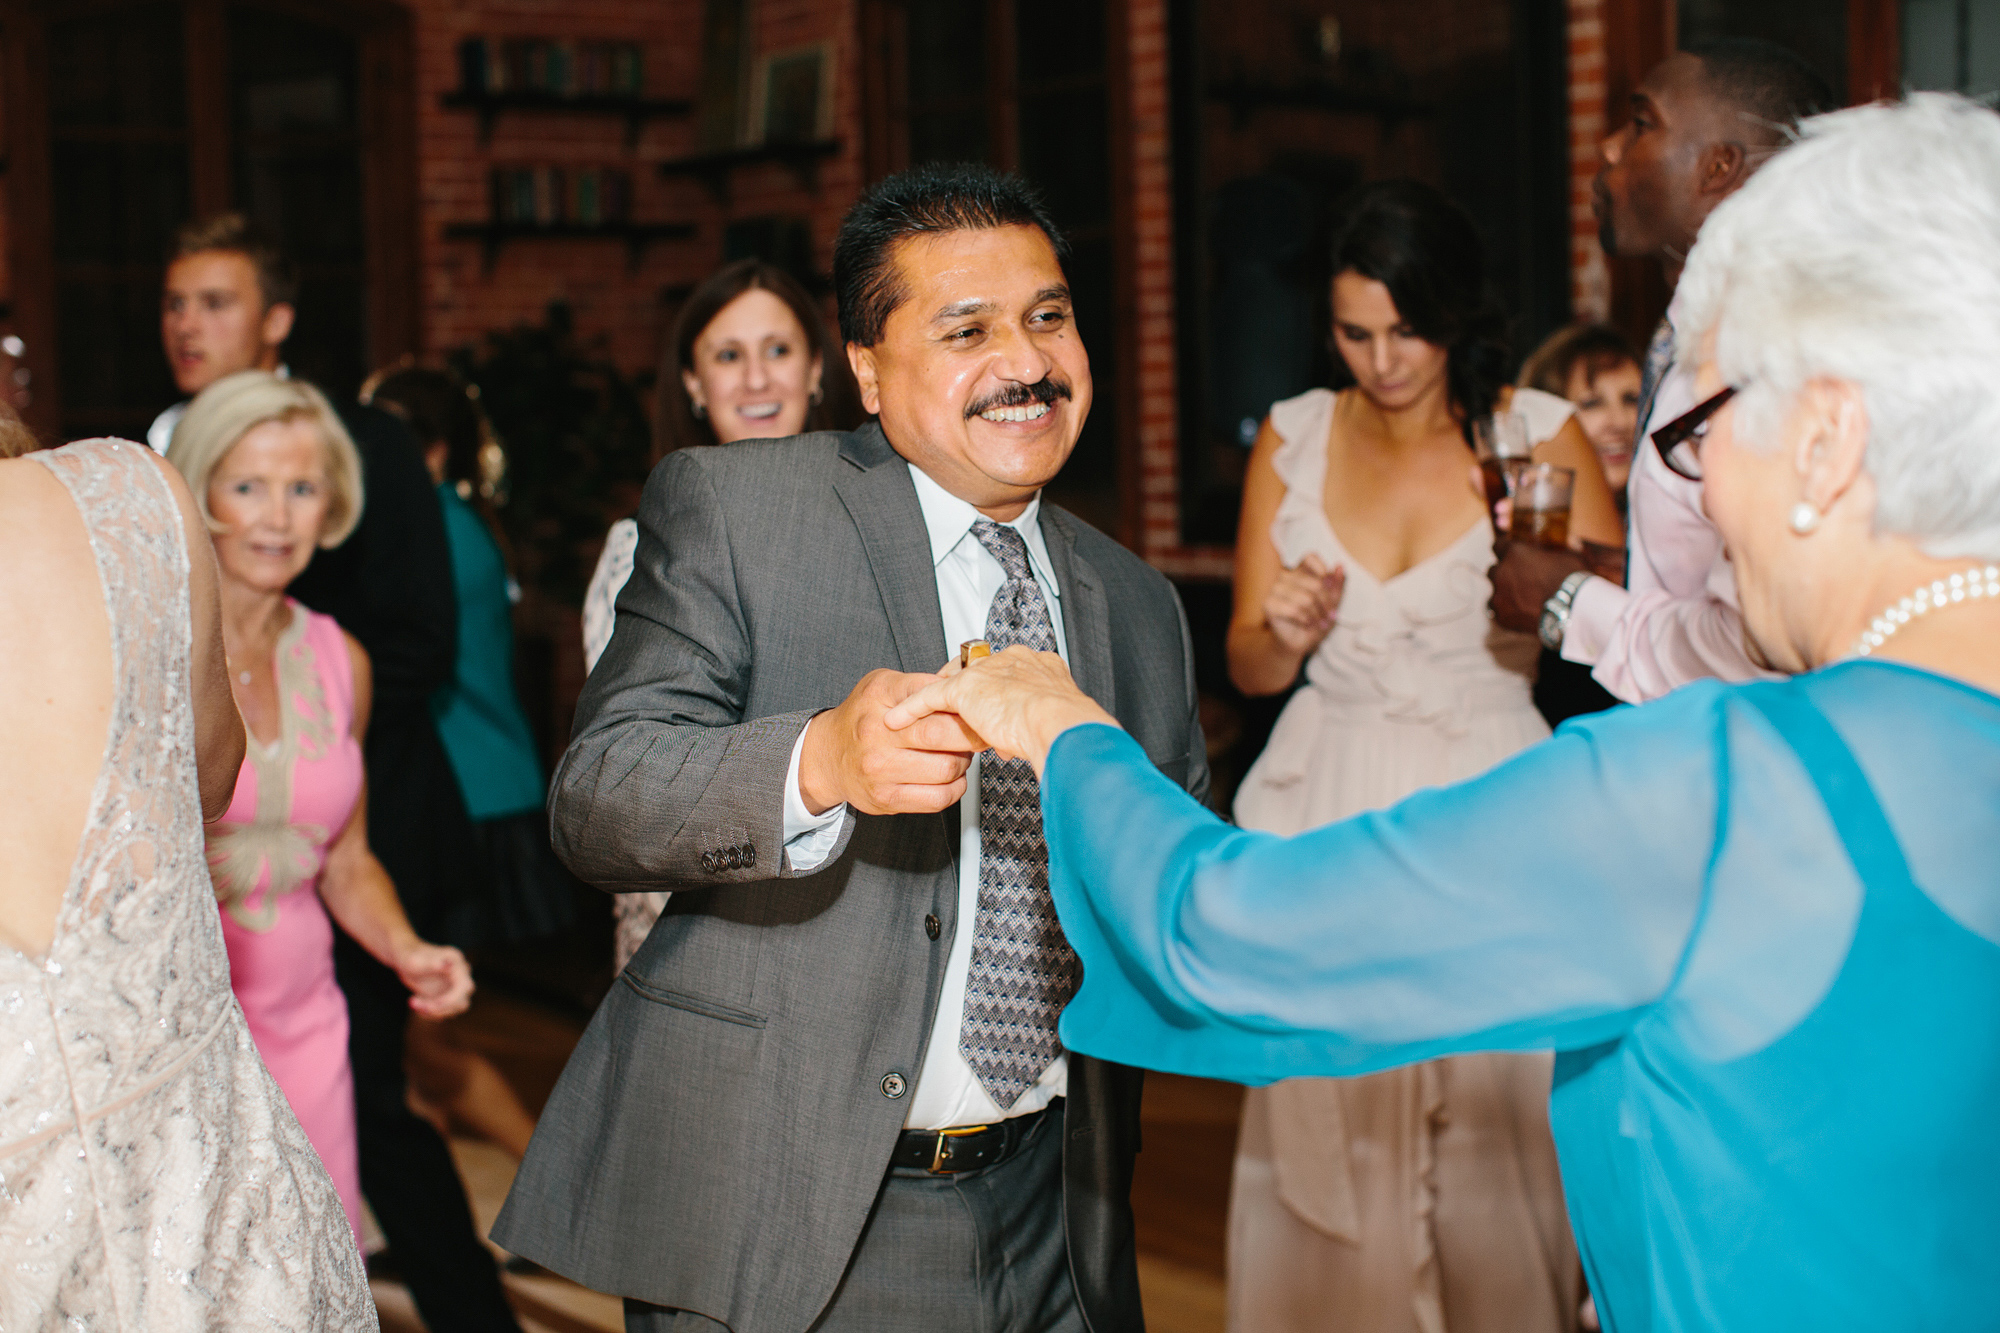 The groom's mother dancing. 